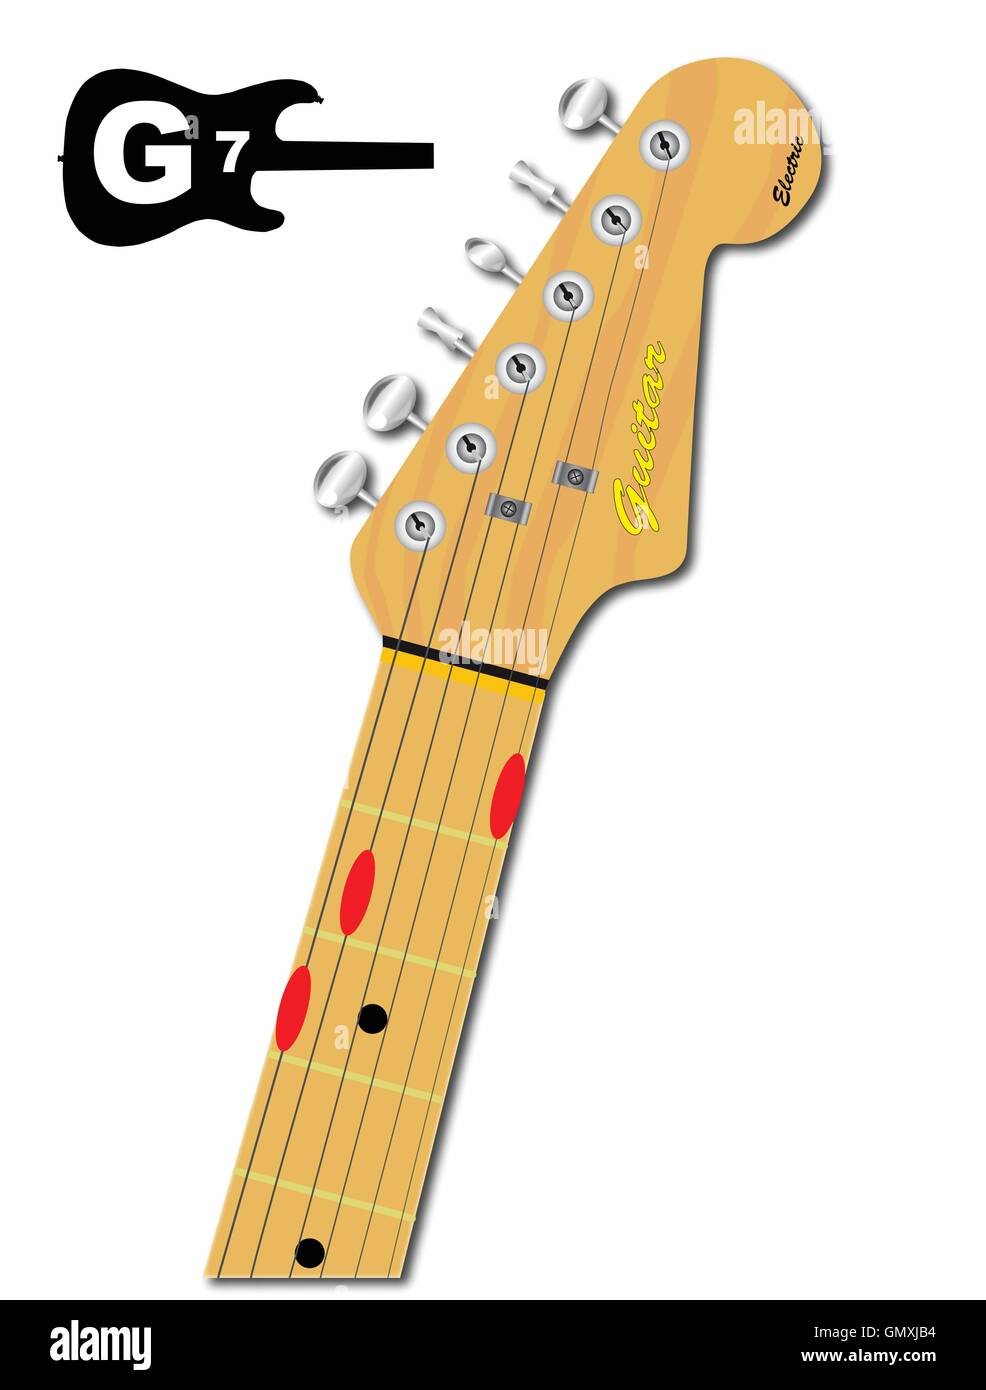 Il Guitar Chord DI G 7 Illustrazione Vettoriale